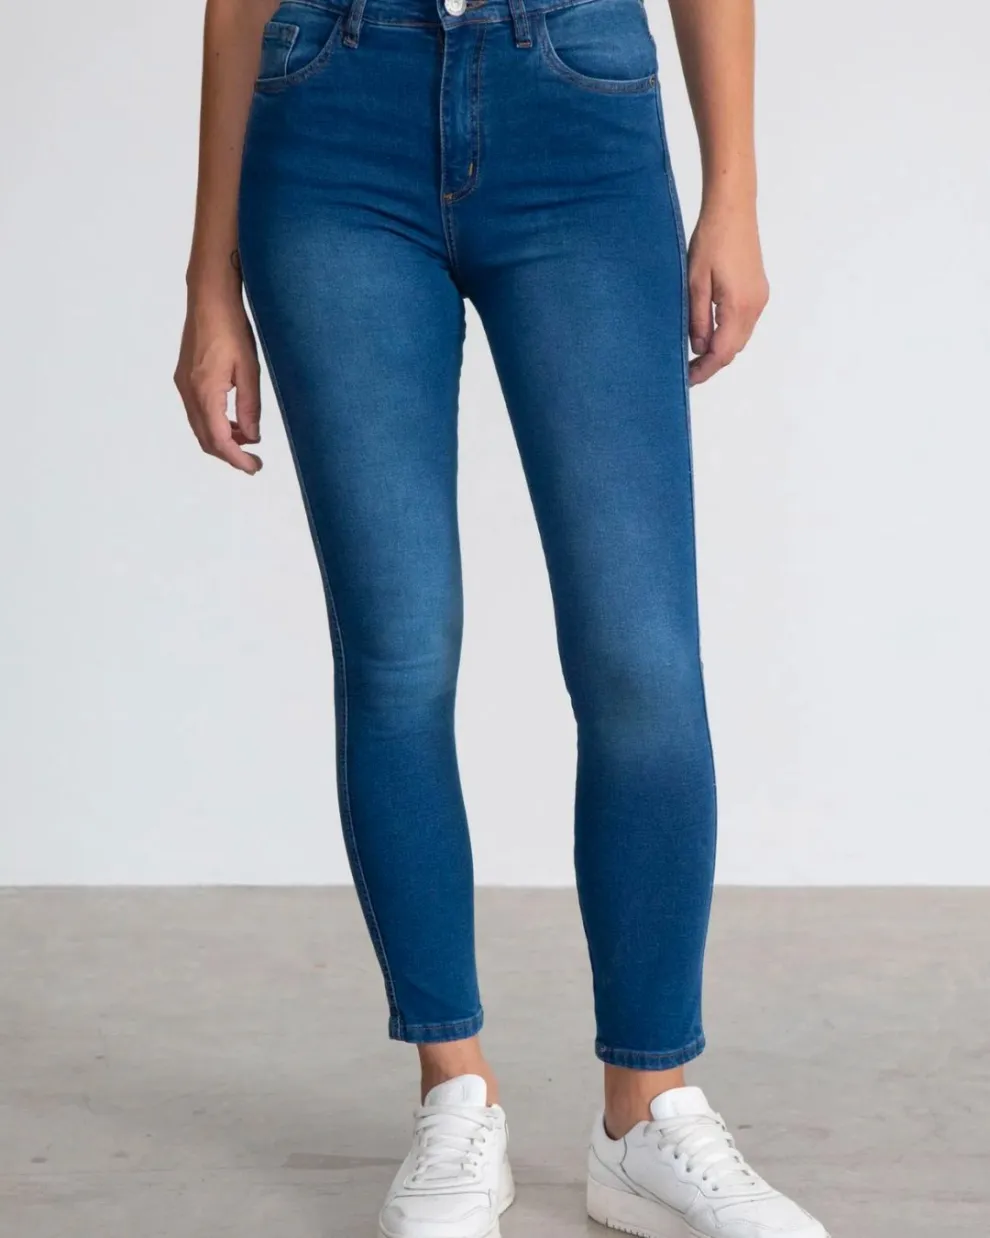 Jeans que reemplazaron a los skinny y que son tendencia para 2022